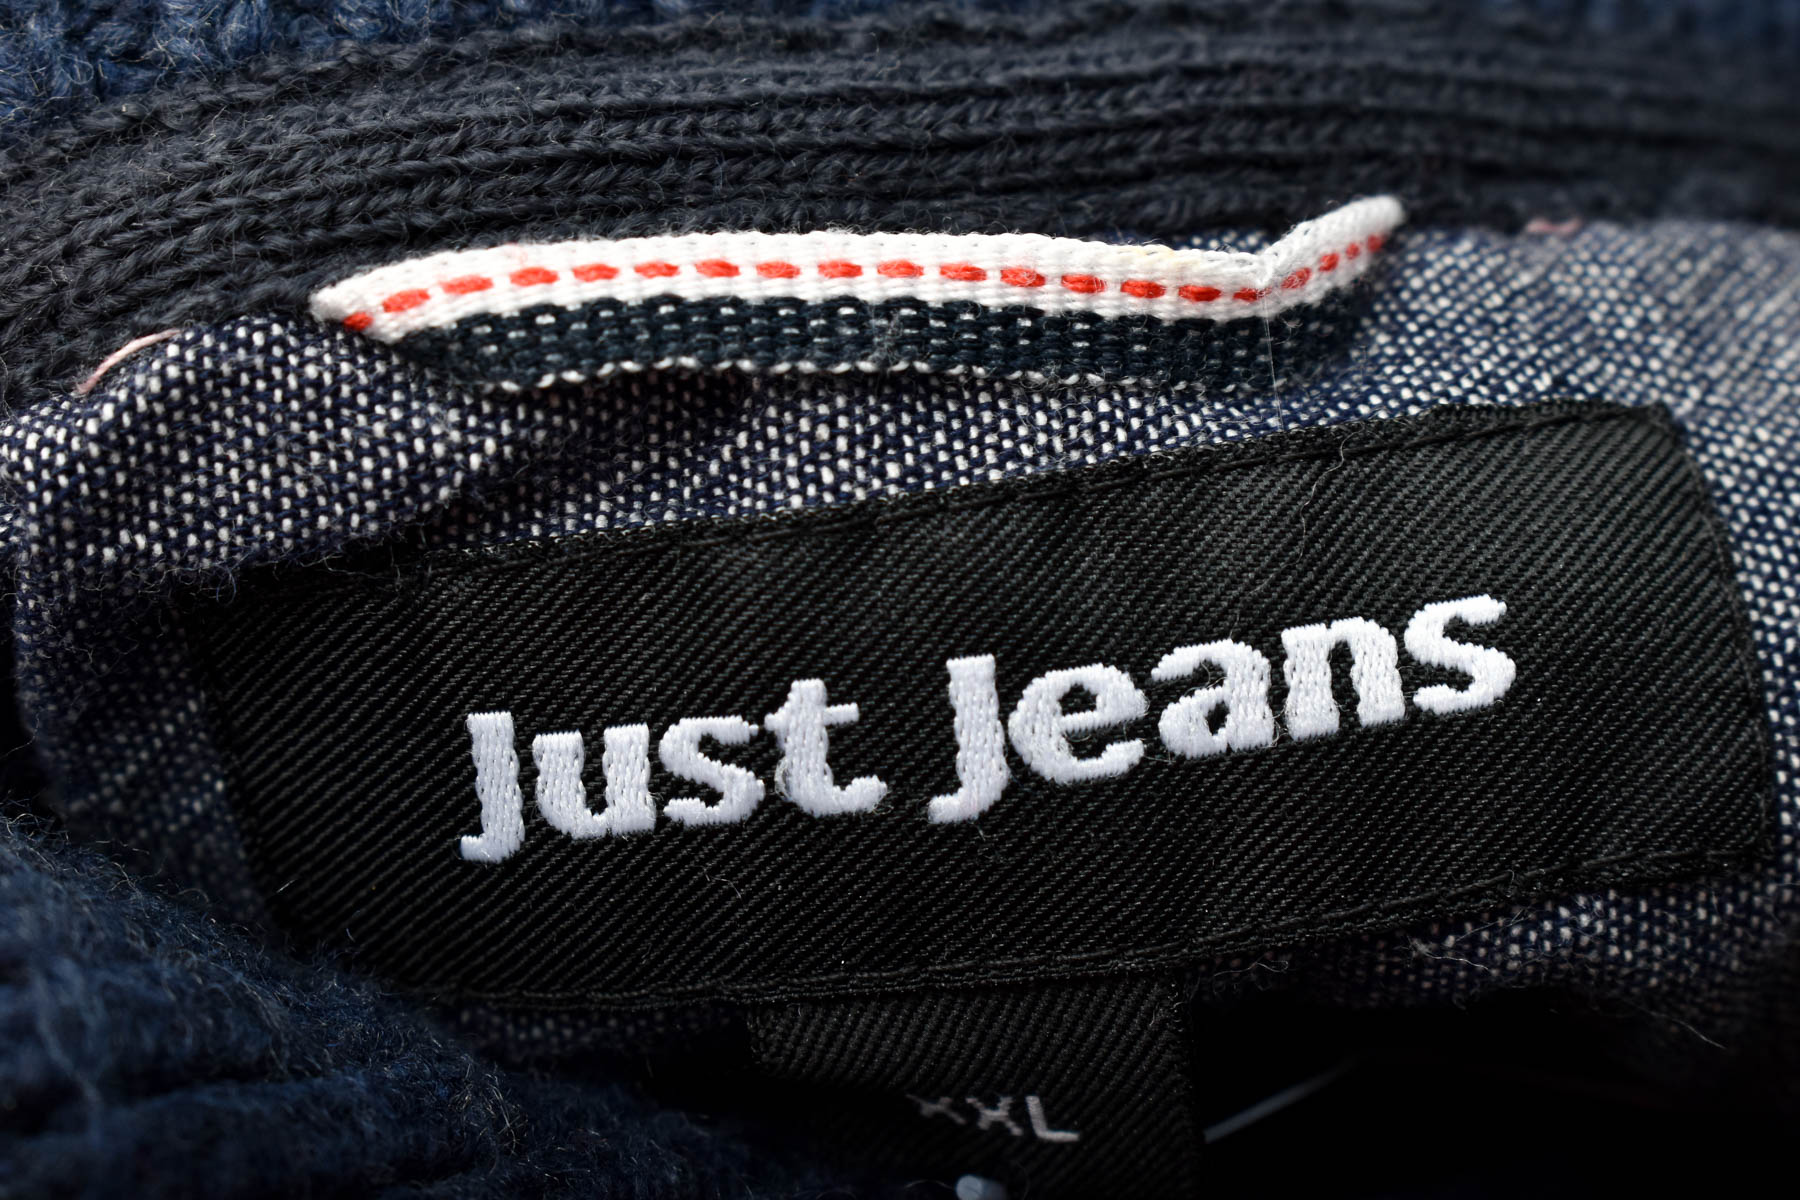 Ανδρικο πουλόβερ - Just Jeans - 2